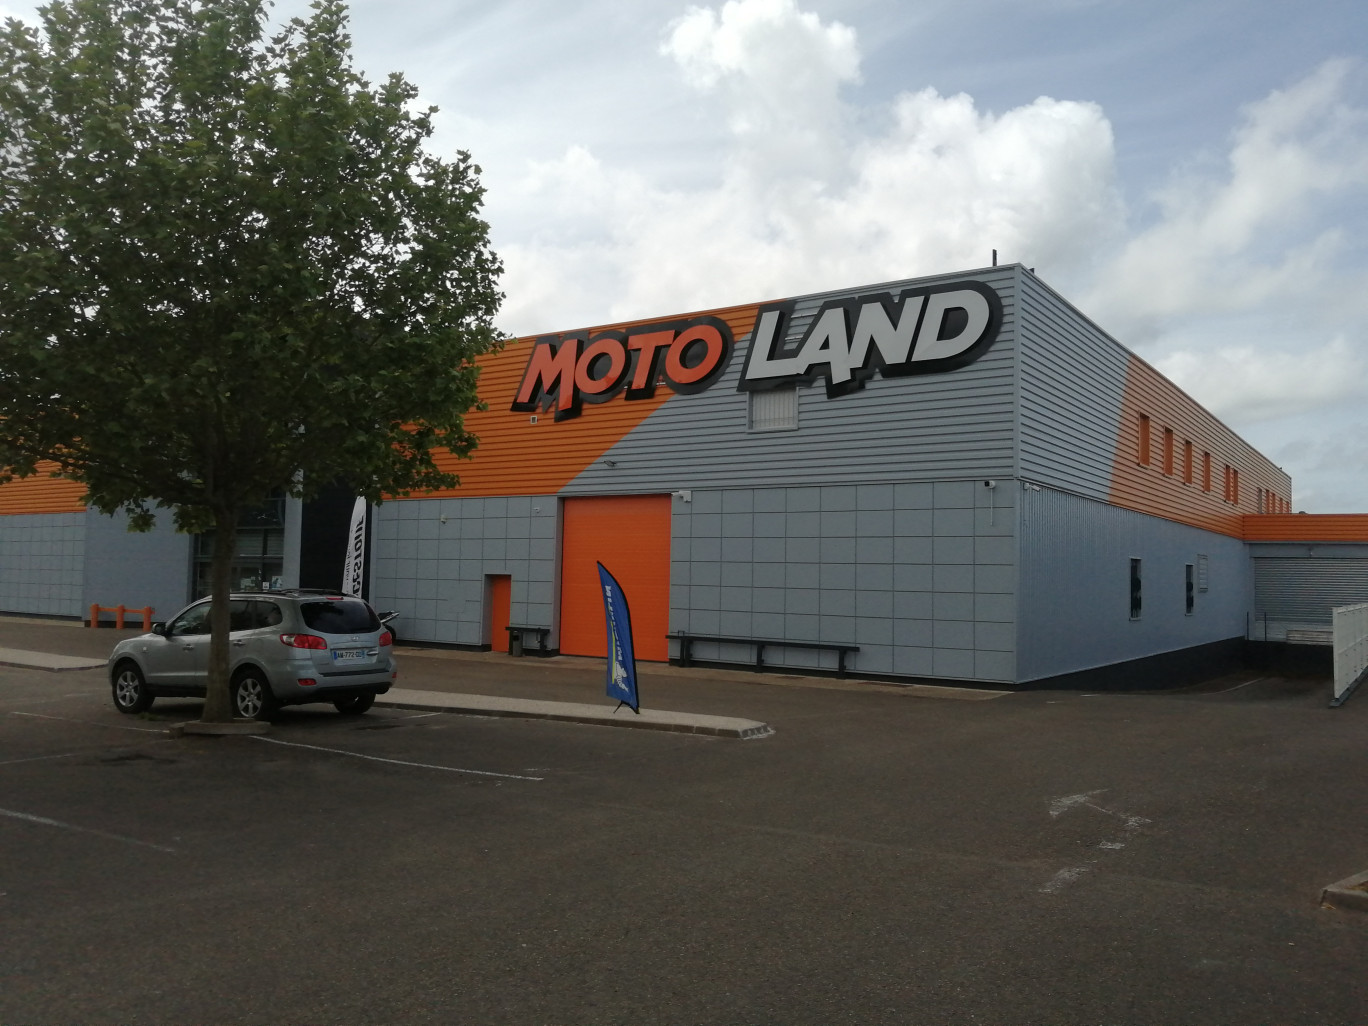 Le magasin Motoland d’Abbeville s’étale désormais sur 3 300 m², il a triplé sa surface. ©Aletheia Press/ Emma Castel